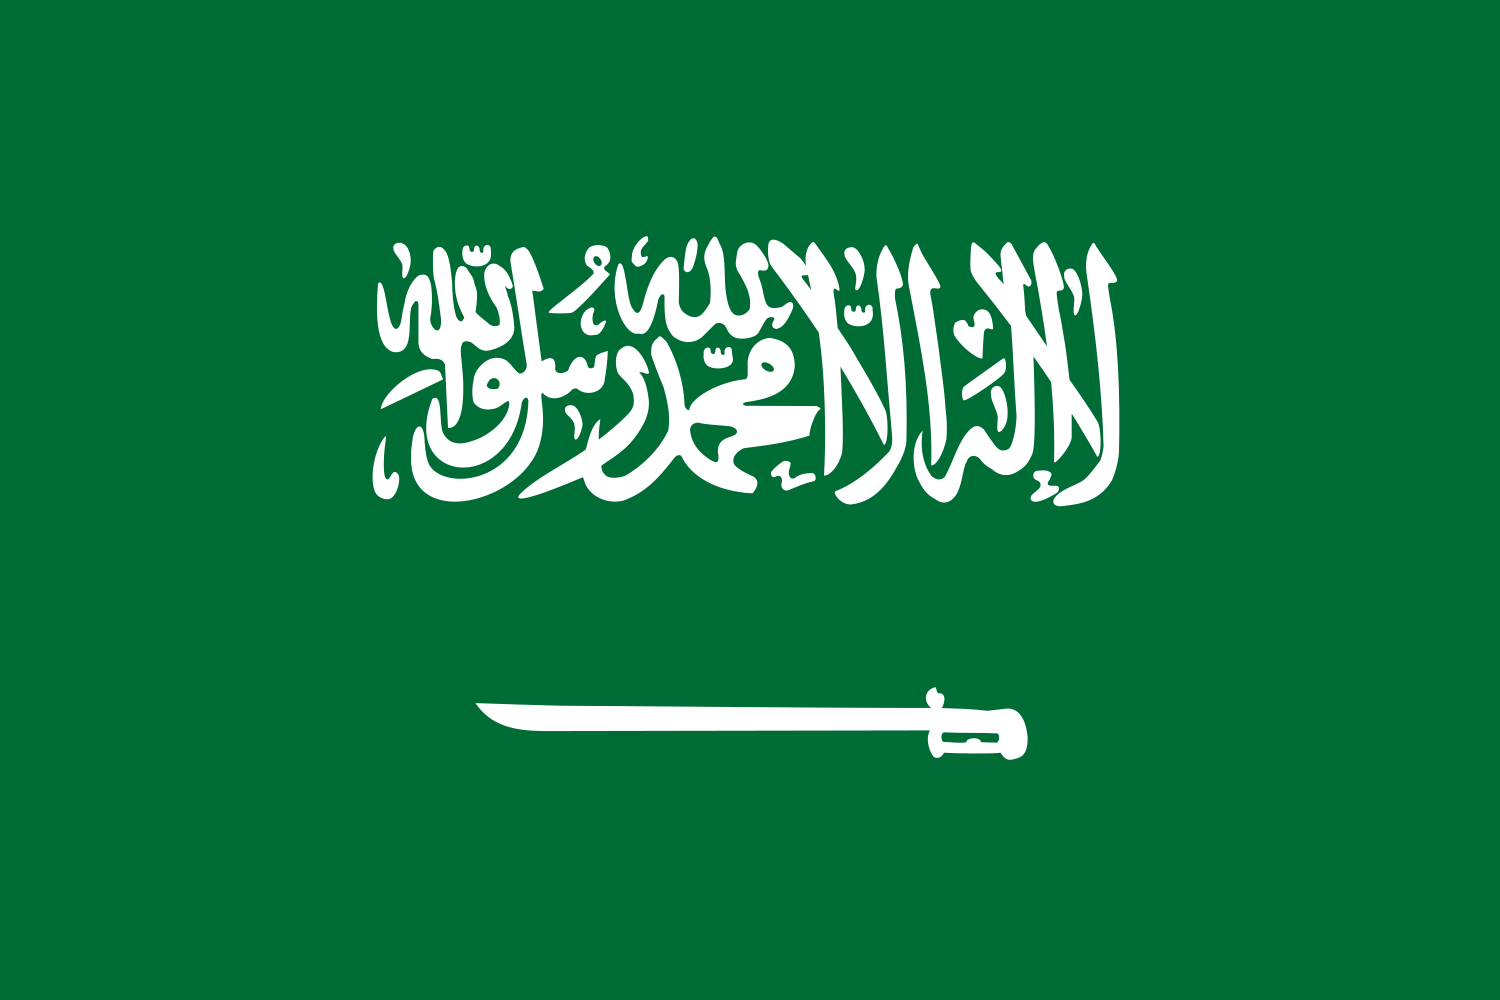 флаг саудовской аравии фото